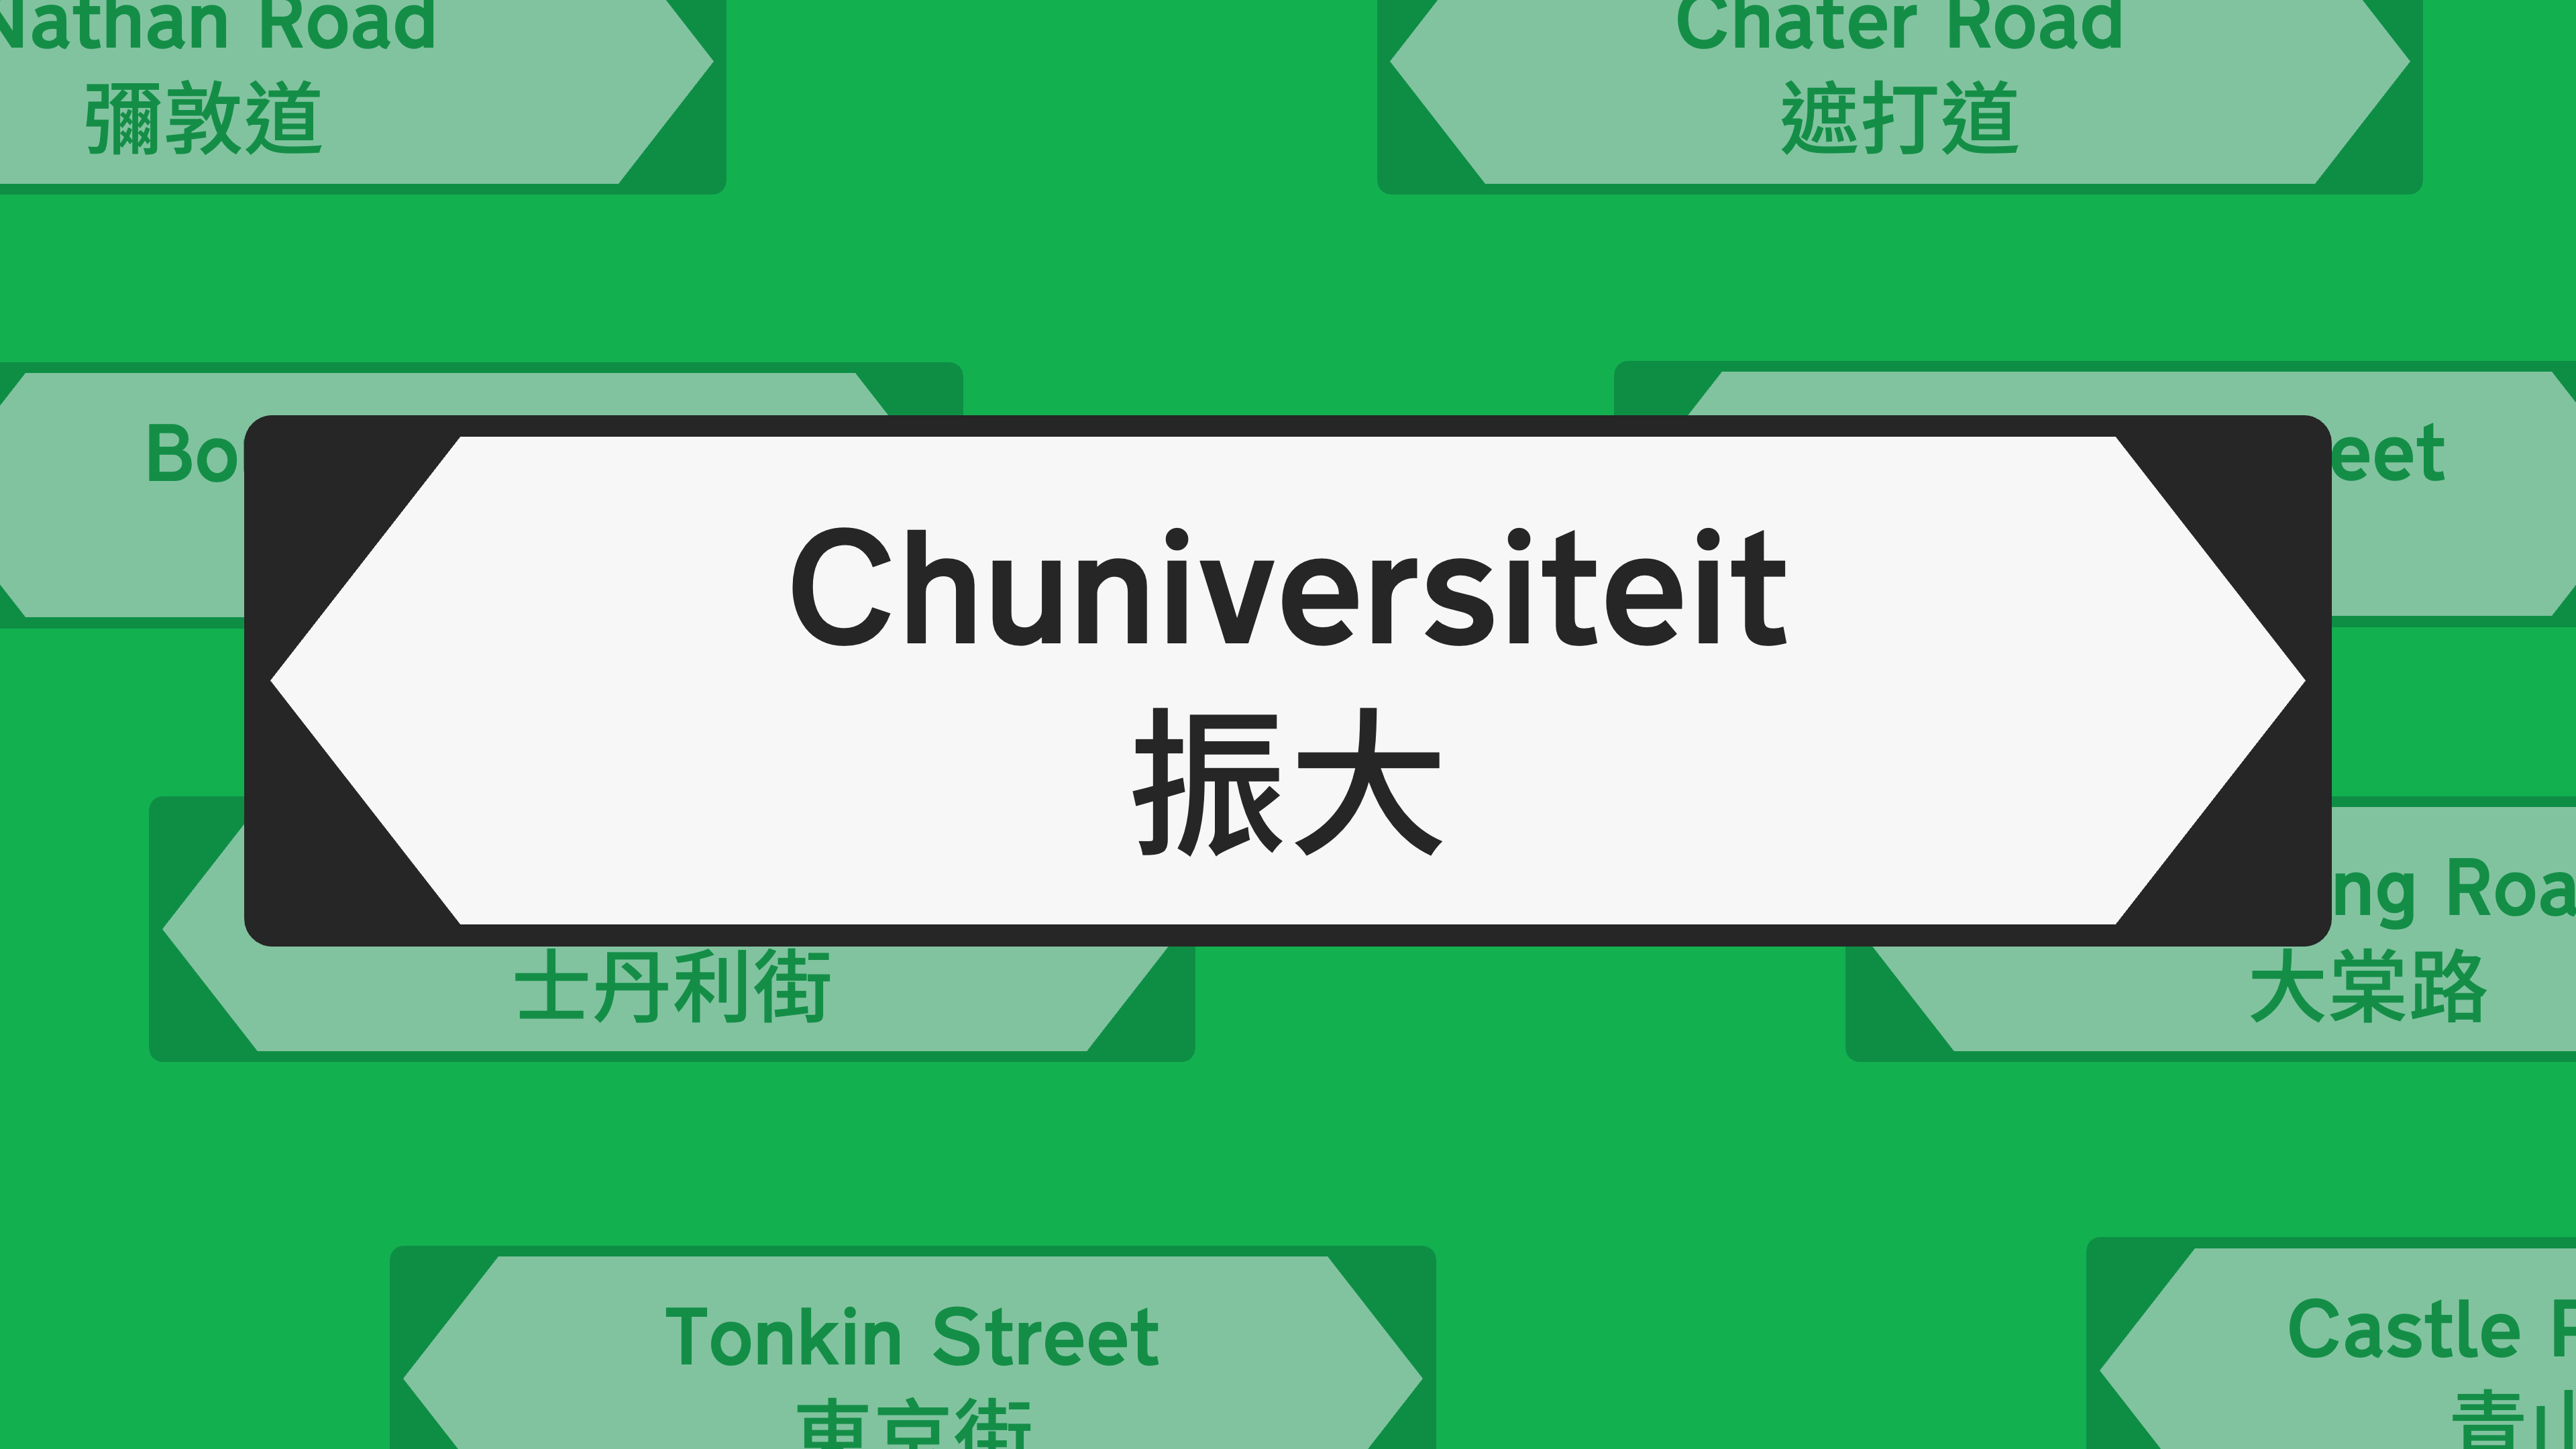 Hong Kong street name signs